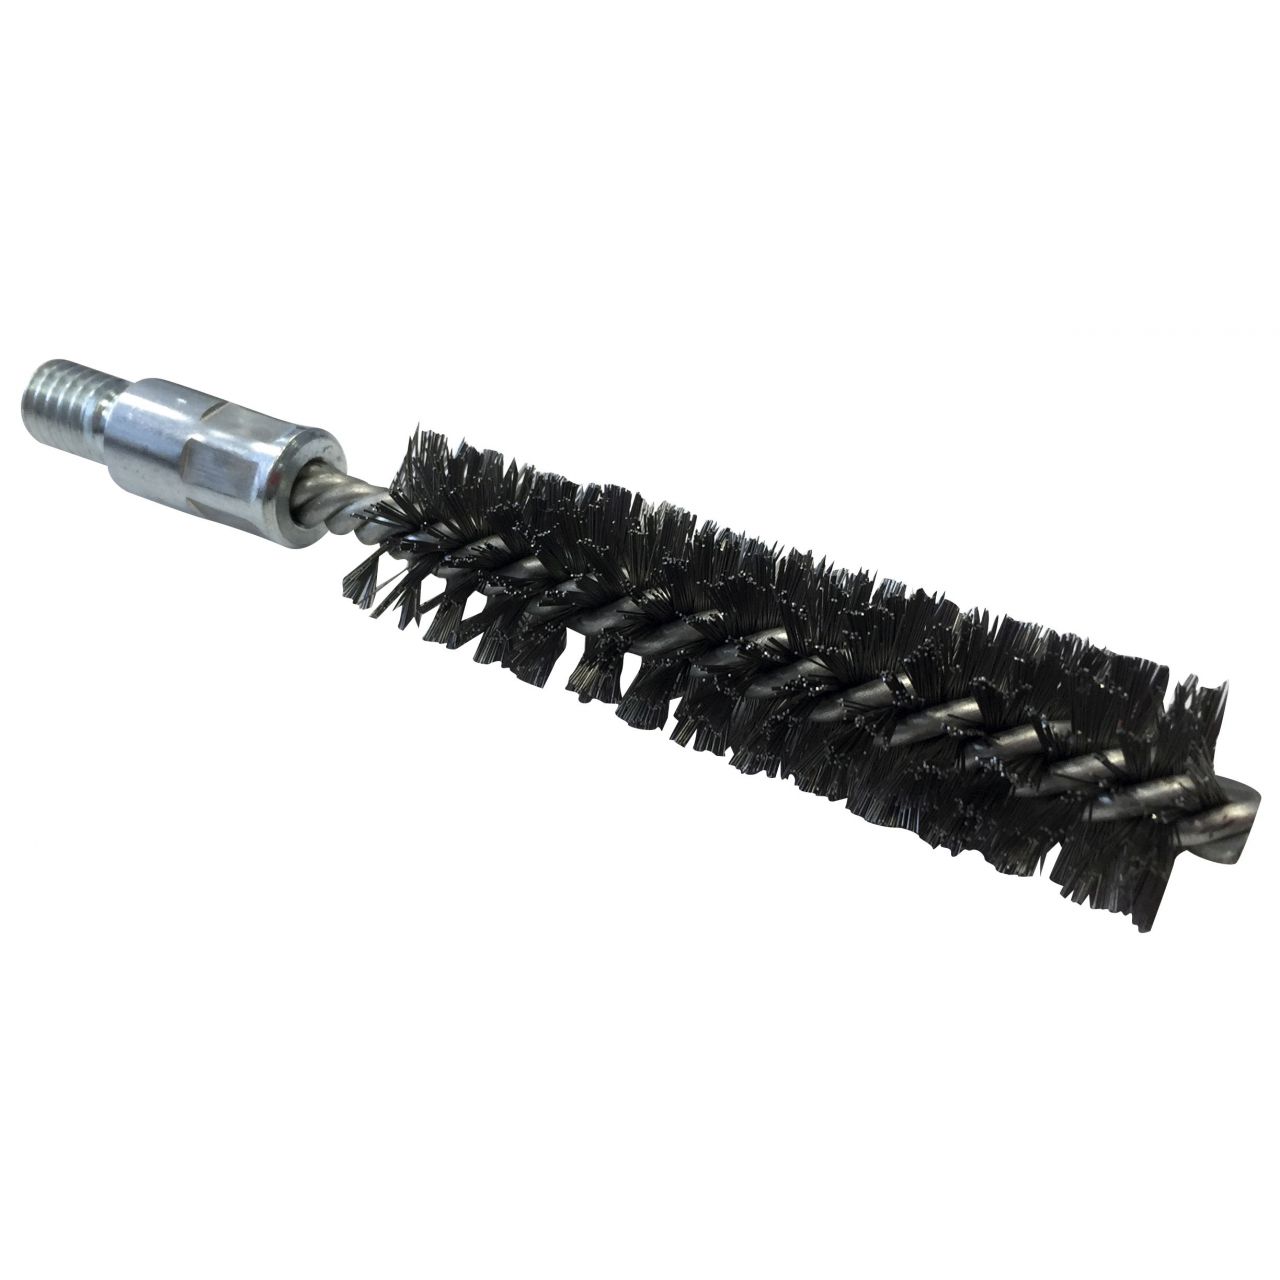 Cepillo limpiatubos de acero con rosca 1/2”BSW Ø 38 mm (100x160x0.3 mm)